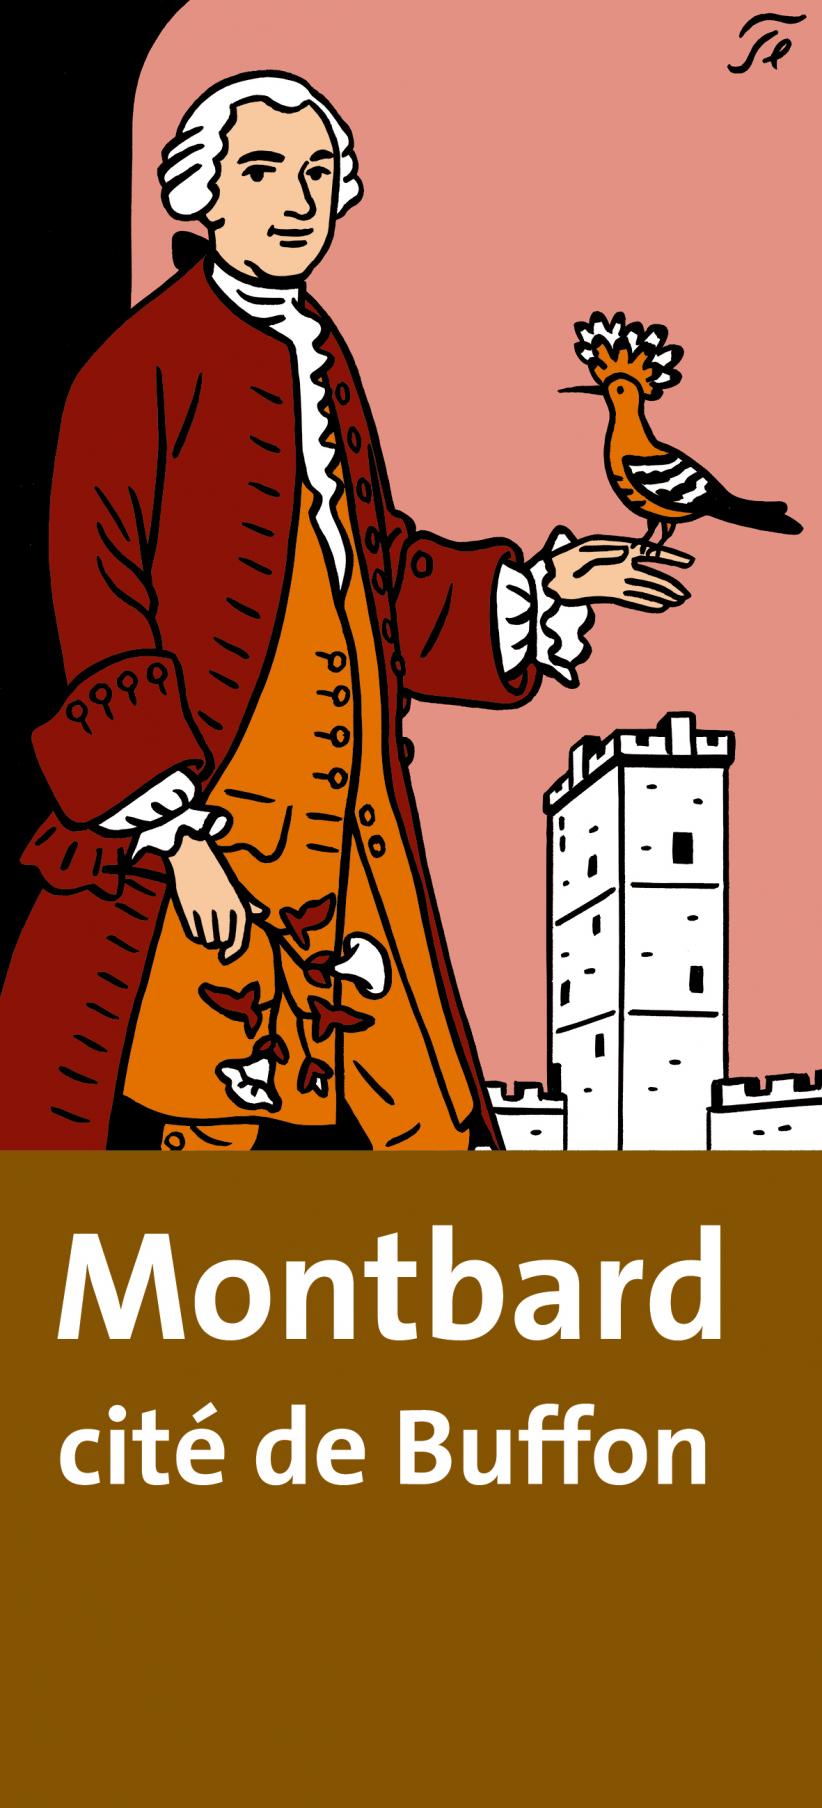 Panneau touristique pour Montbard